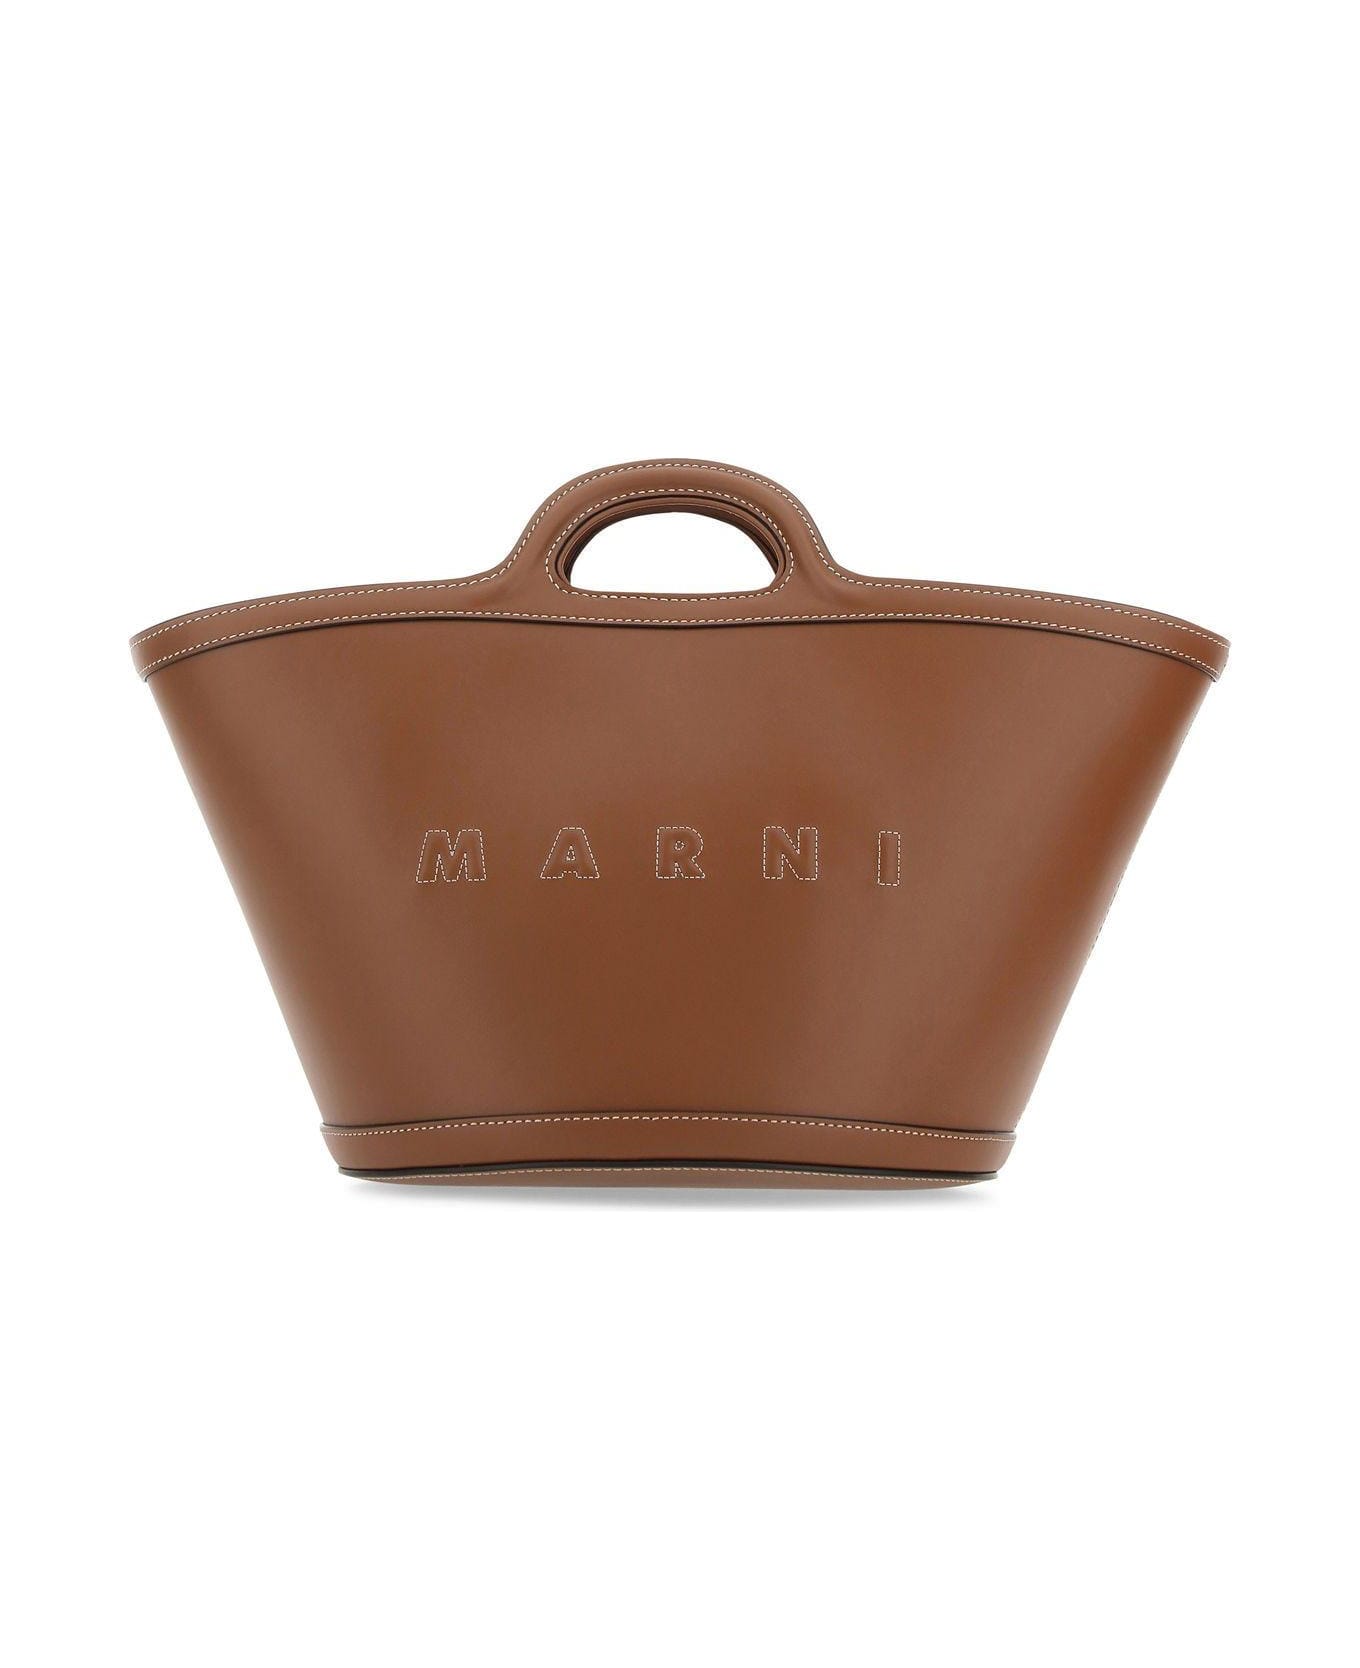 Marni Brown Leather Small Tropicalia Handbag - BROWN